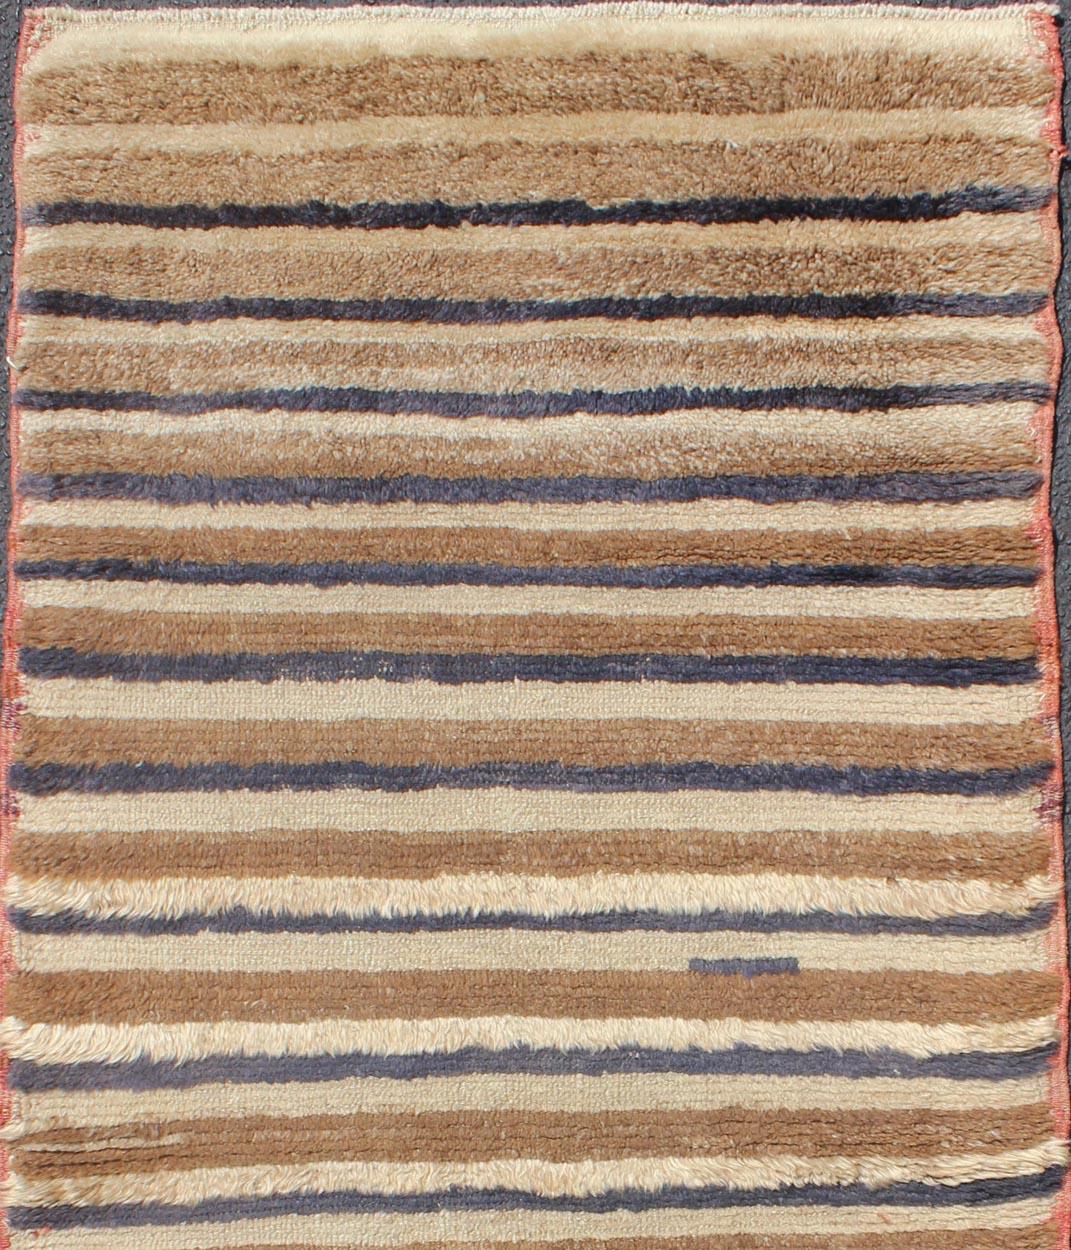 Tapis turc vintage Tulu avec un motif à rayures marron clair, beige/taupe clair et bleu marine, tapis EN-140393. Keivan Woven Arts /  pays d'origine / type : Turquie / Tulu, vers le milieu du 20e siècle.

Mesures : 2'7 x 5'10.